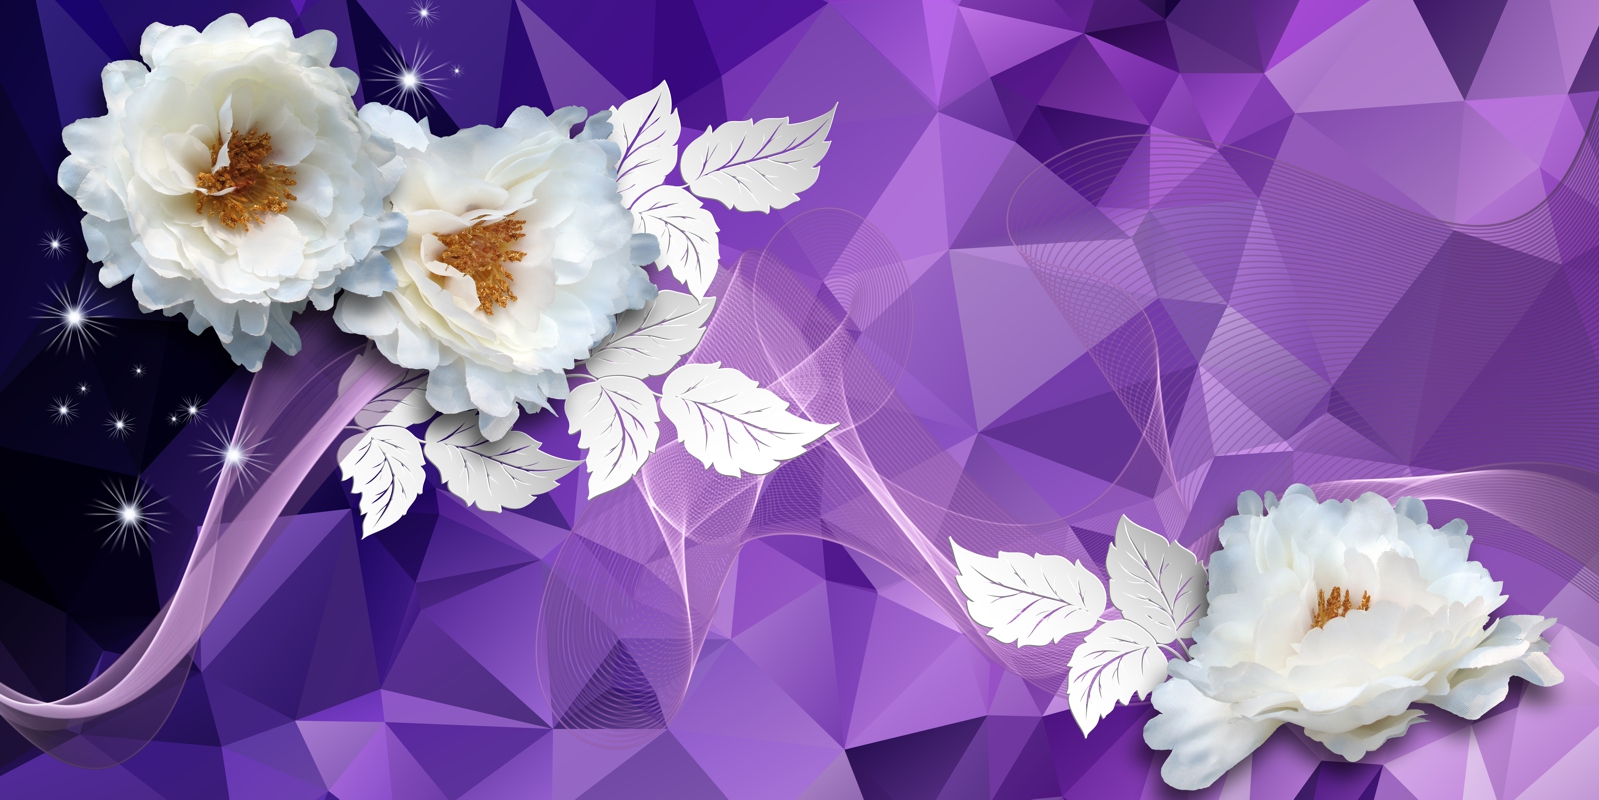 Vlies Tapete Fototapete 3D Effekt lila violett Blumen weiss